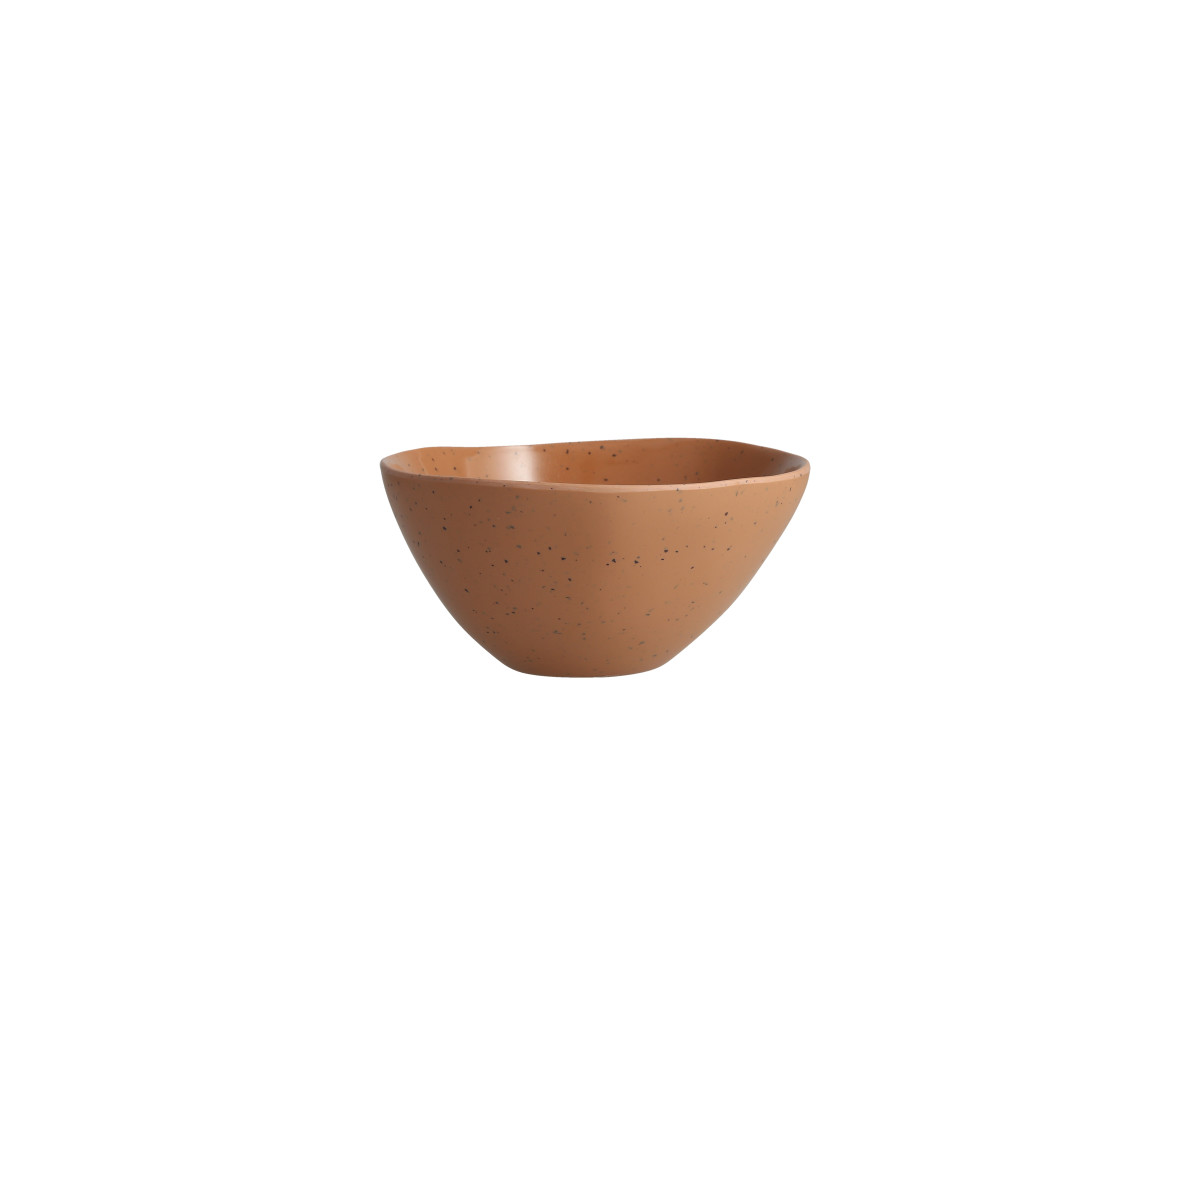 Sandia Adobe Cereal Bowl 6"